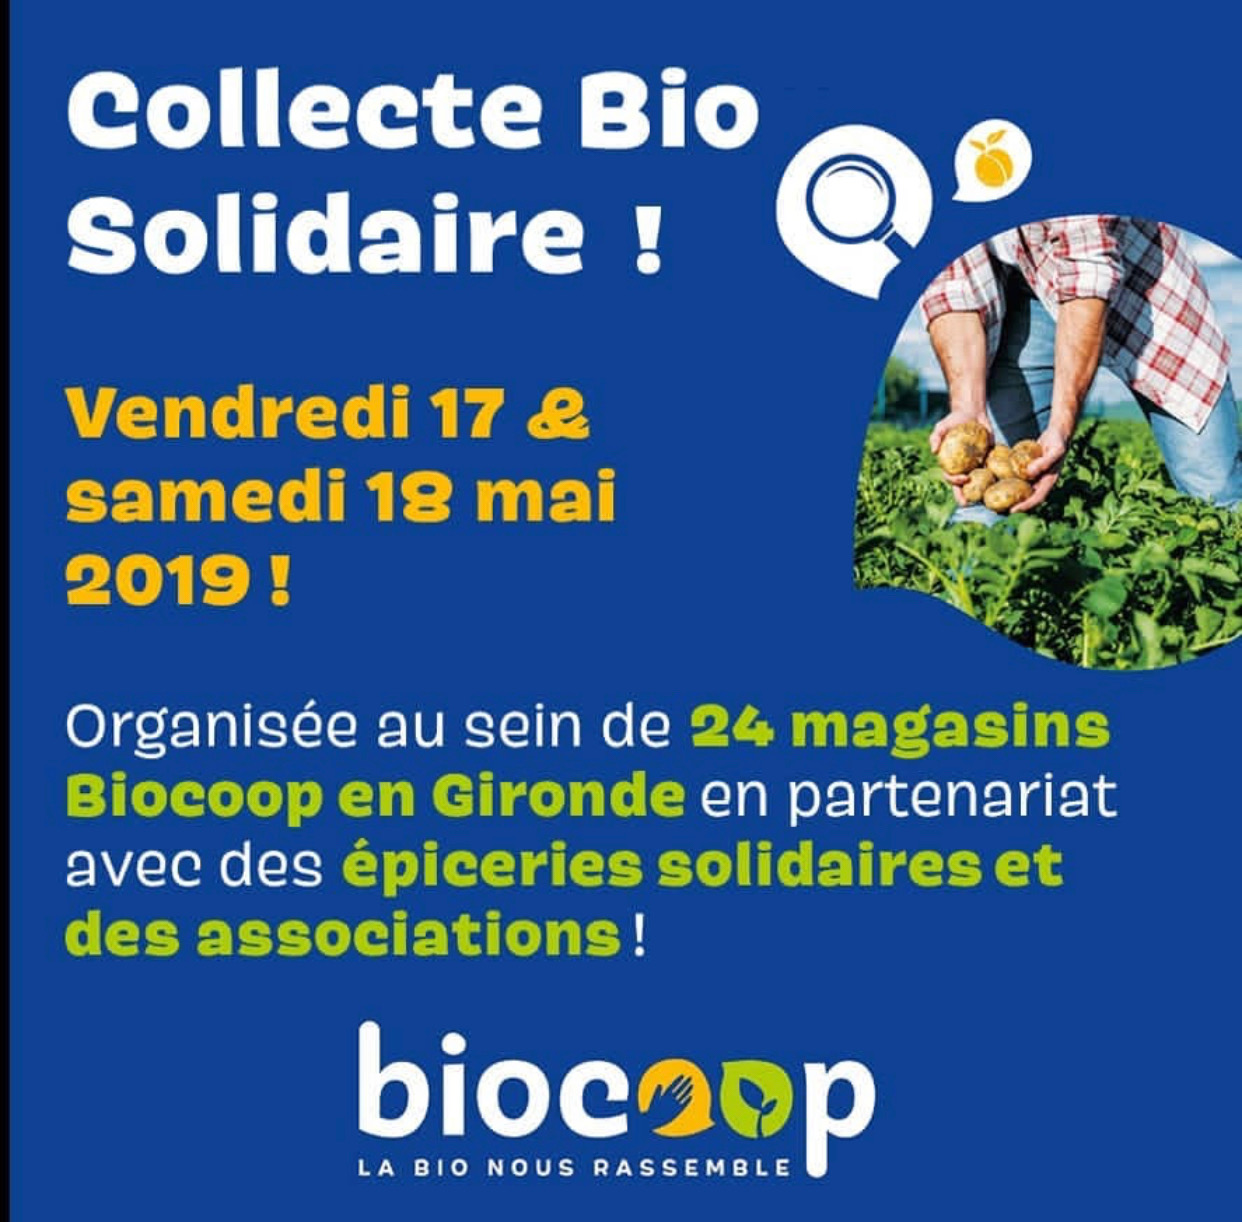 Collecte bio solidaire vendredi 17 et samedi 18 mai